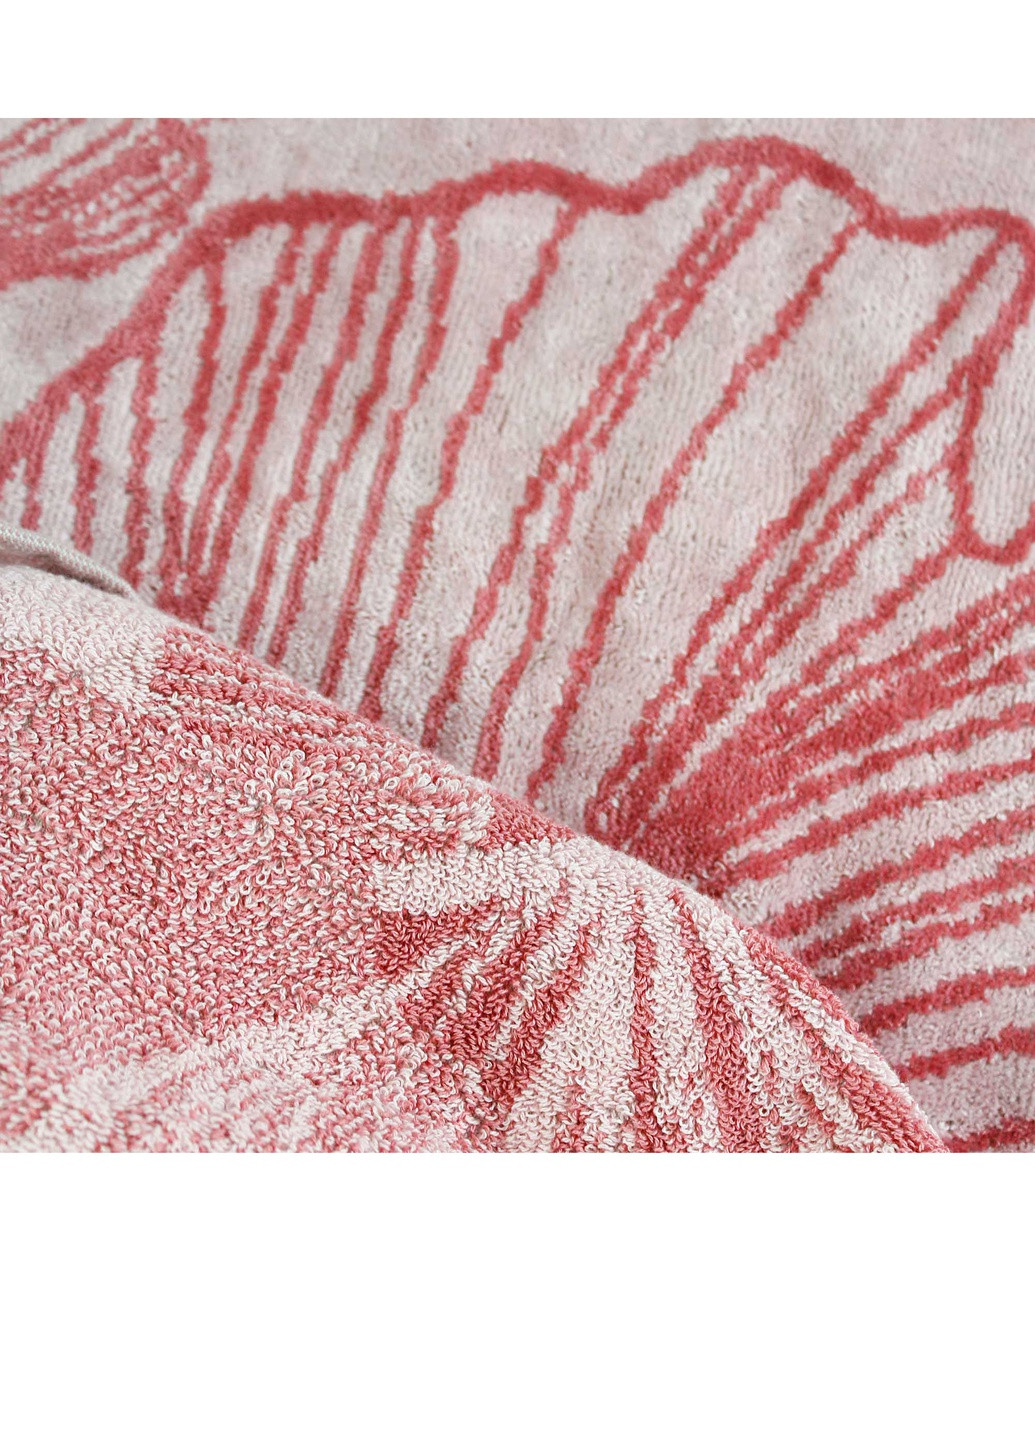 Bulgaria-Tex полотенце махровое bali (болгария) розовое, размер 70*140 см, плотность 420гр/м2 розовый производство - Болгария